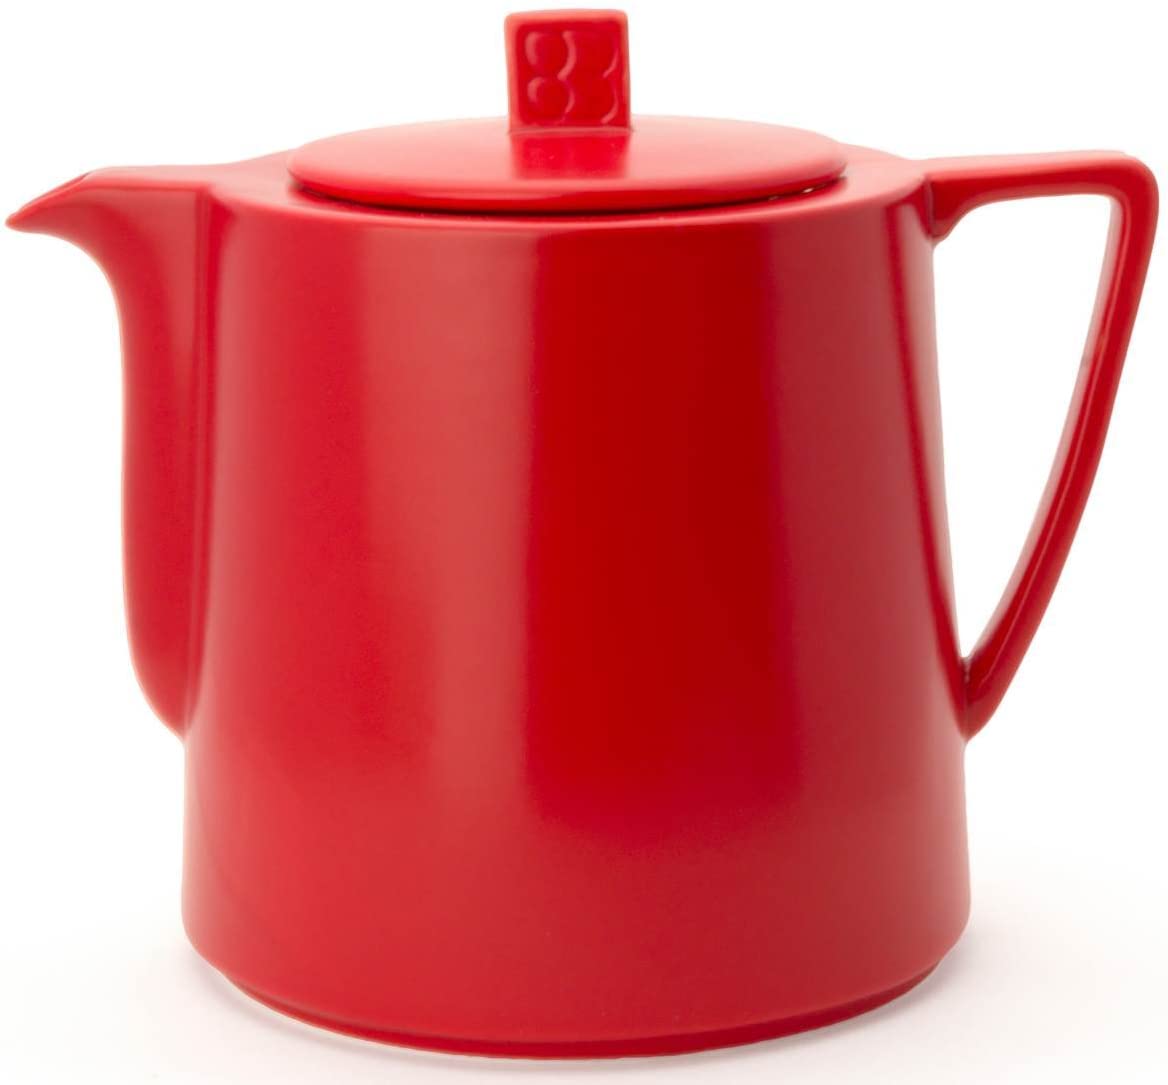 Bredemeijer Teapot 1.5 L, red teapot Lund 1.5 L, red, ceramic, 14.4 x 20.5 x 17.4 cm